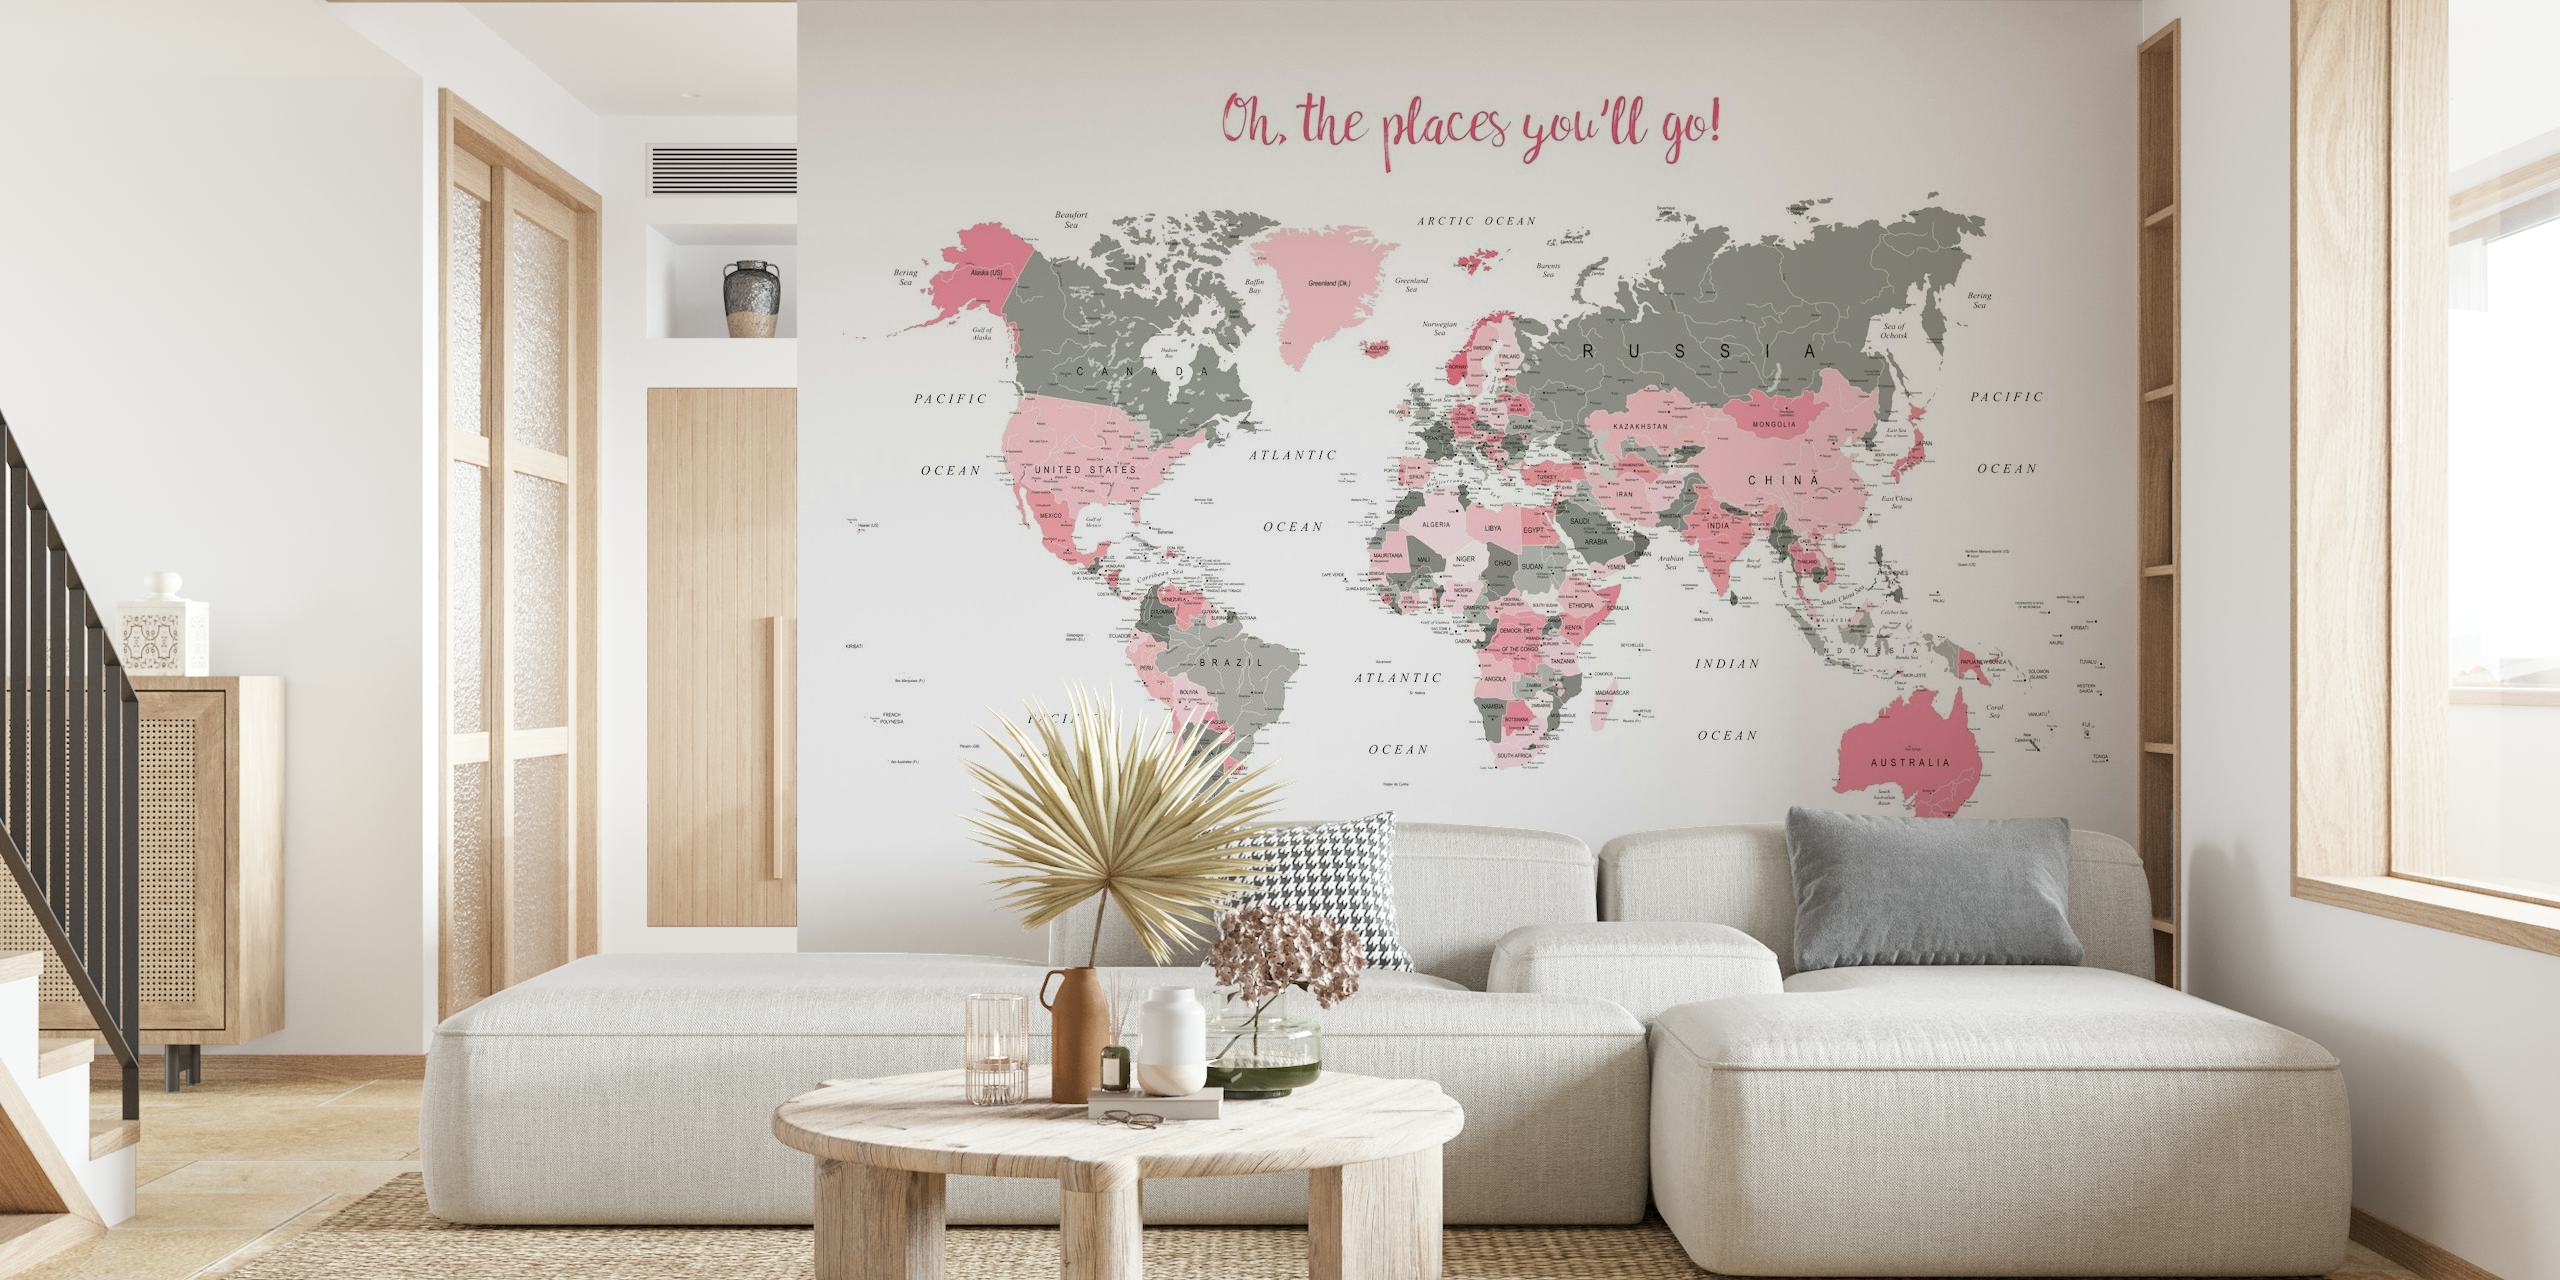 Papier peint mural élégant avec une carte du monde avec des reflets roses et la phrase « Oh The Places You'll Go ! pour la décoration de la maison.